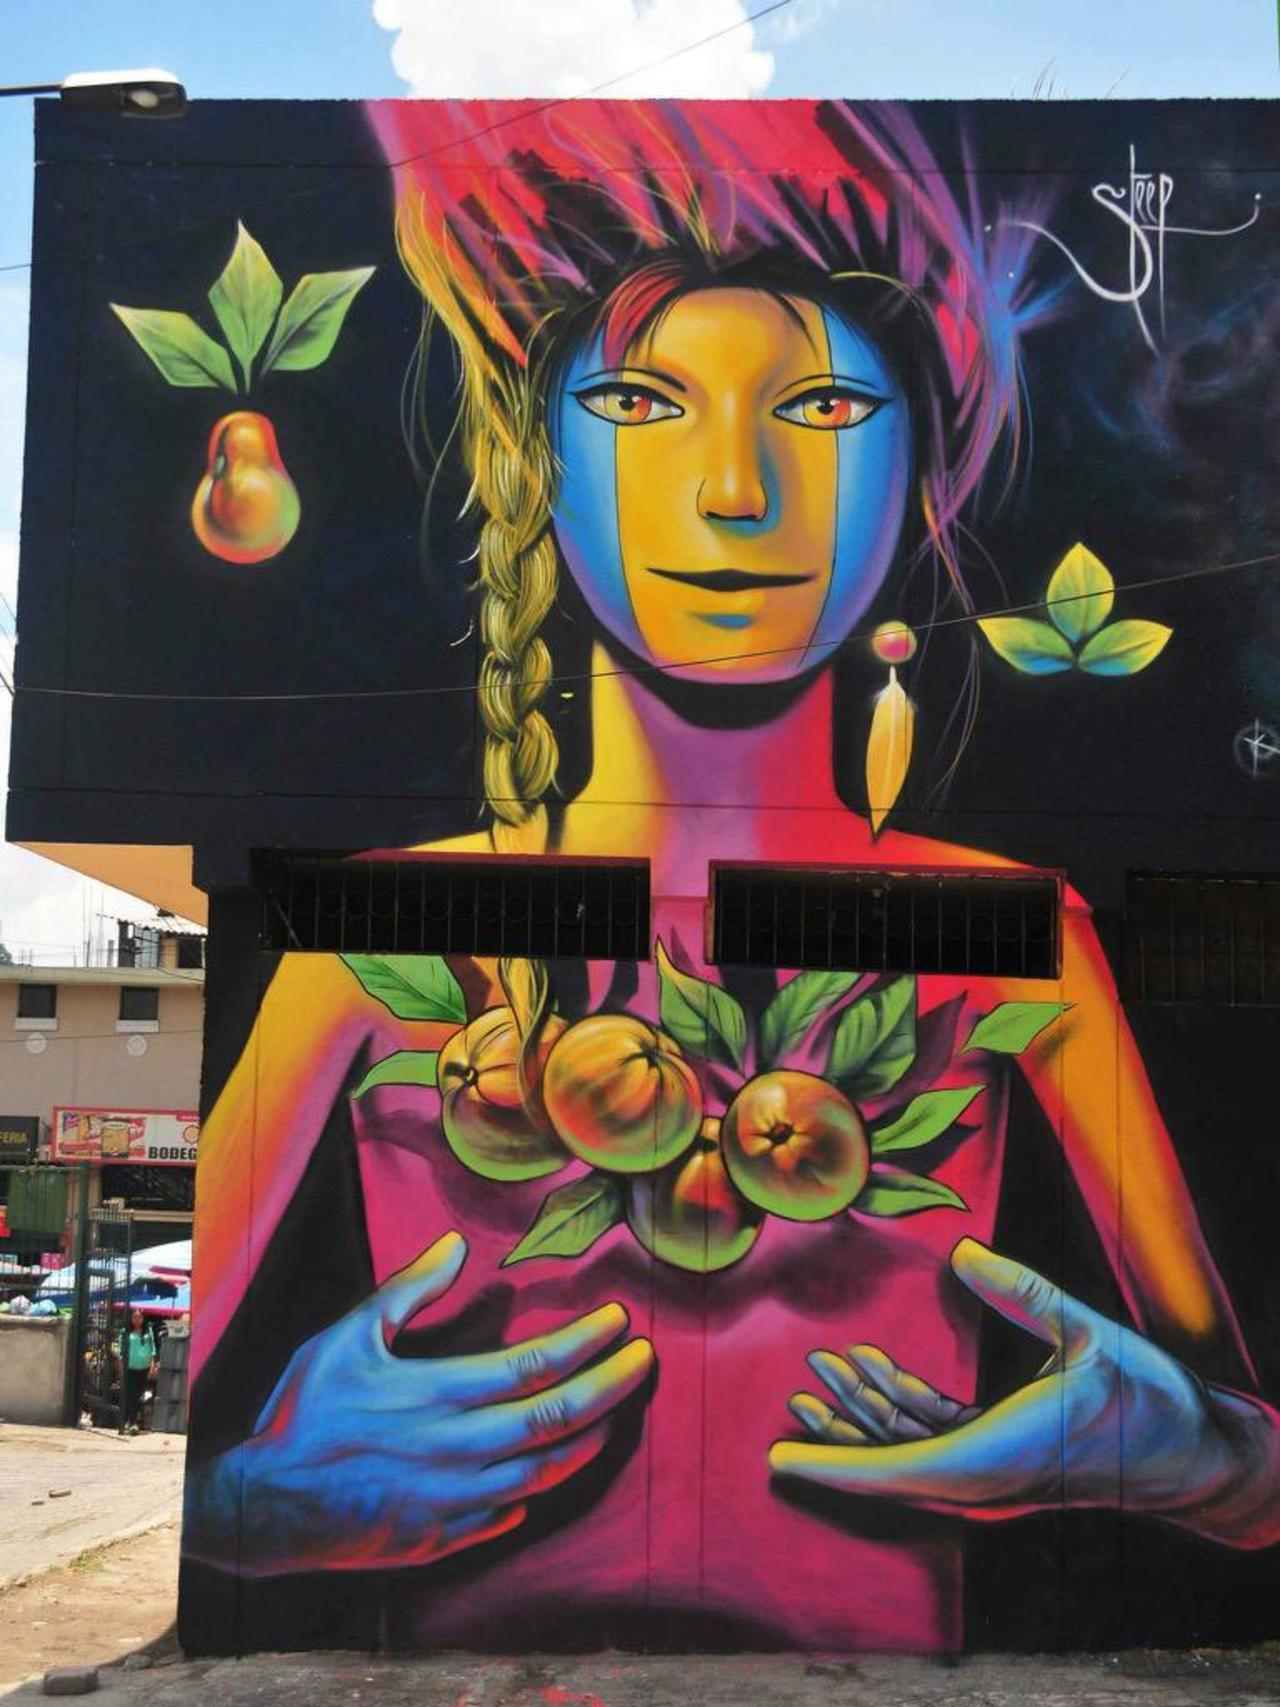 Street Art by Steep

#art #graffiti #mural #streetart http://t.co/FY6hgL6D06